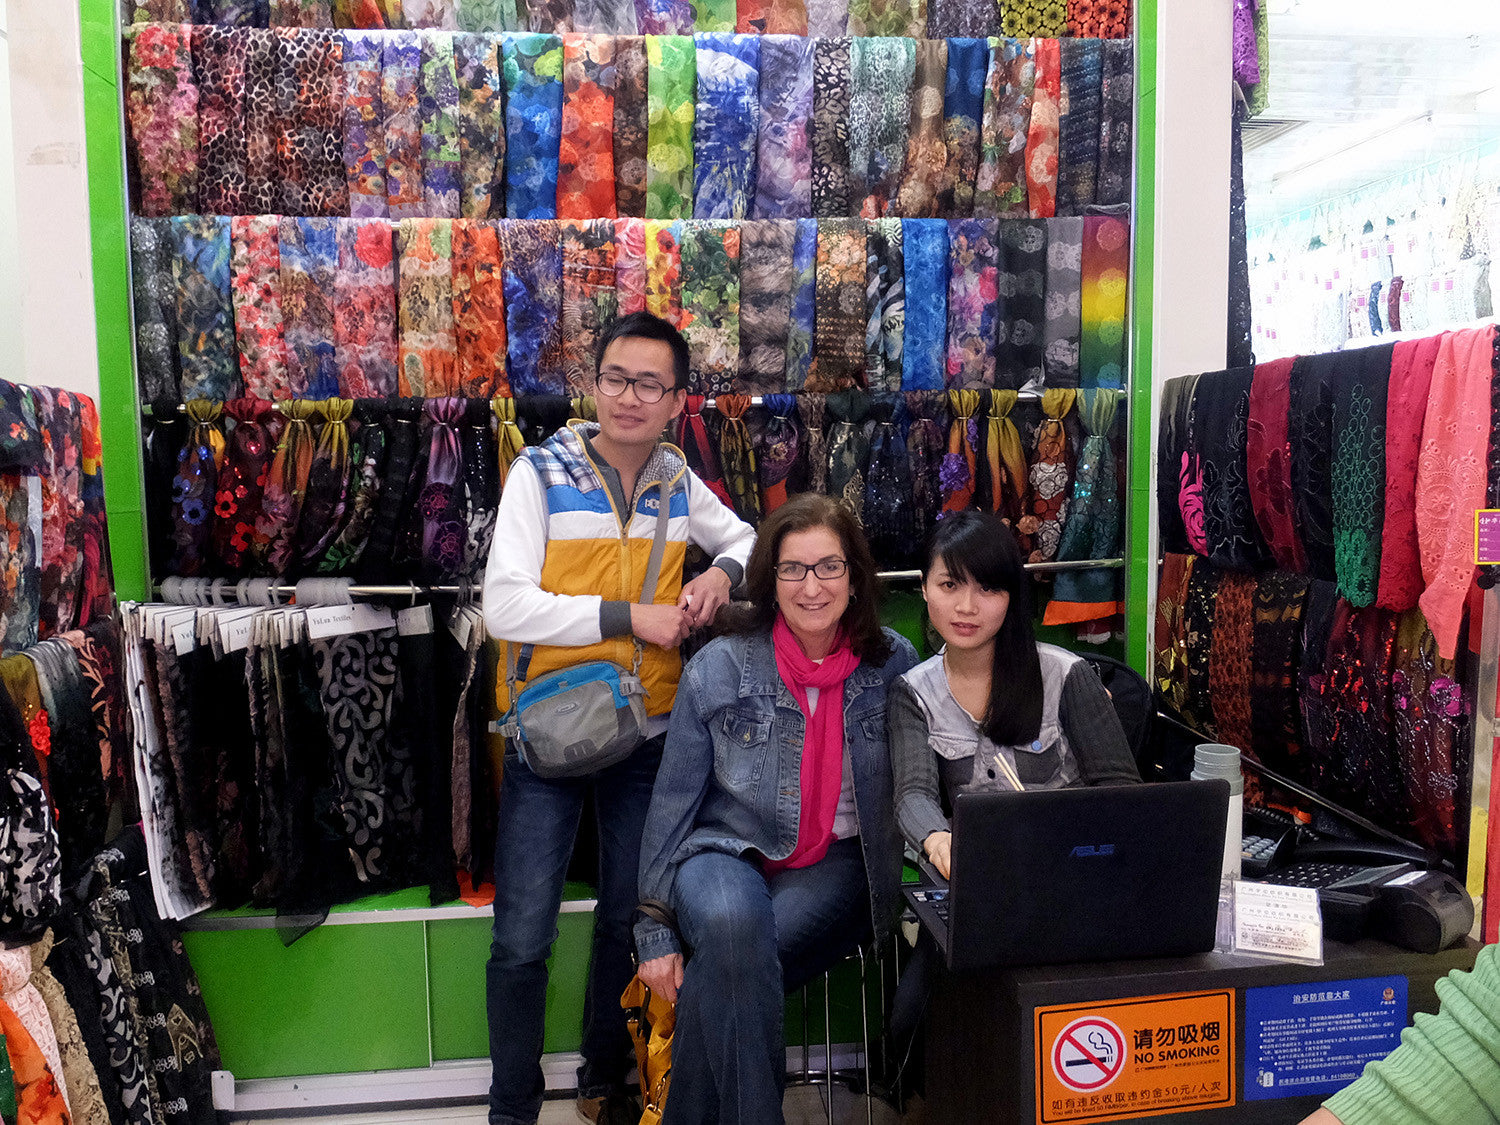 Famed Fabric Market in Guangzhou, China